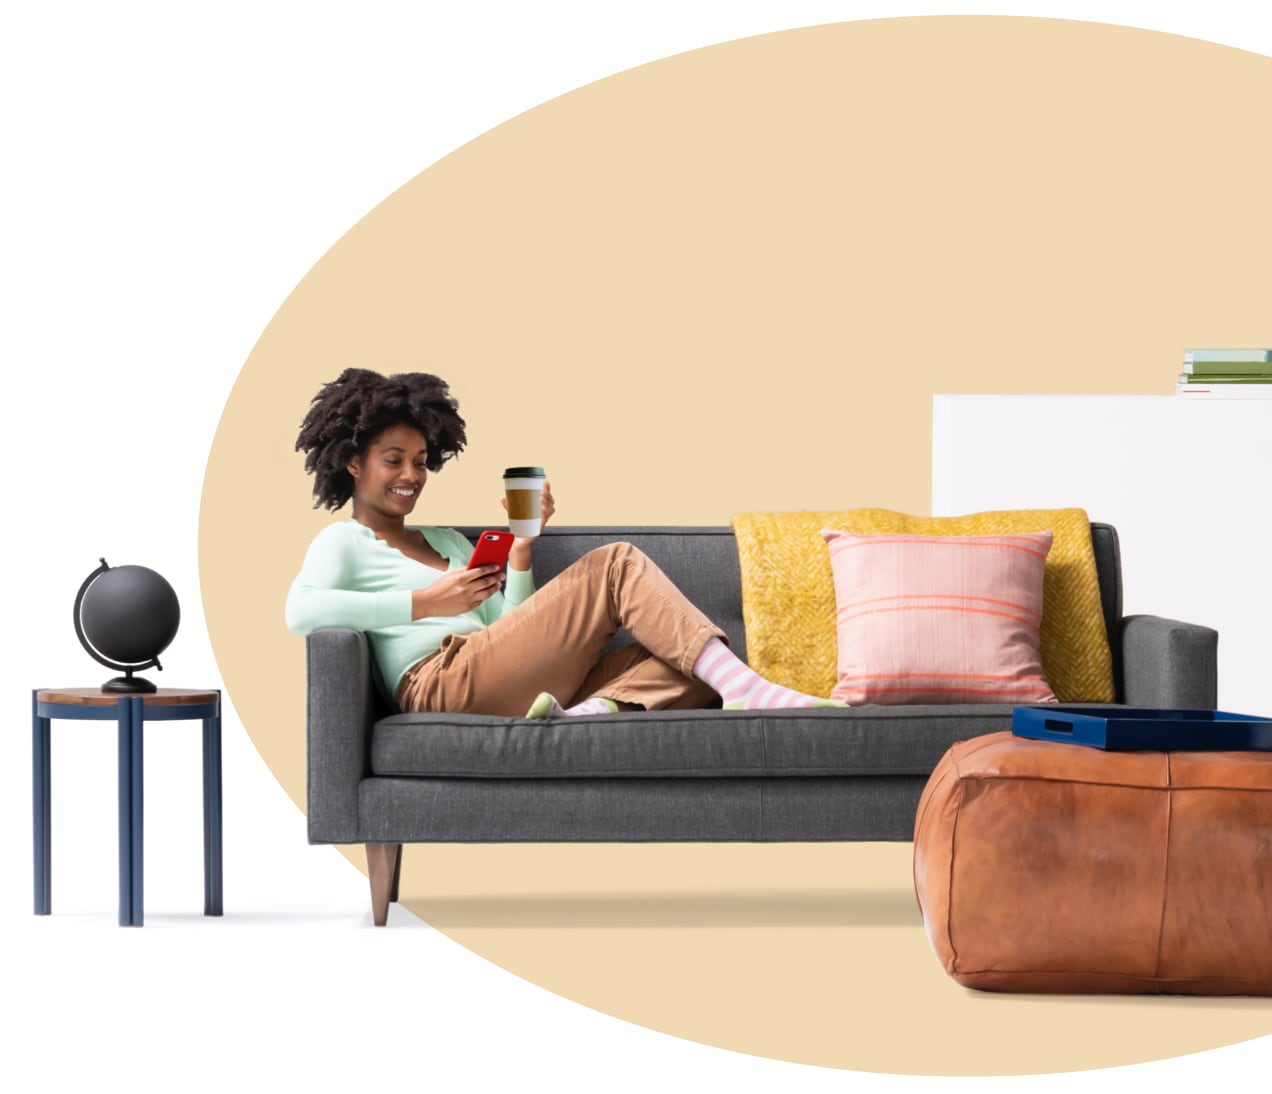 Mujer sentada en un sillón sosteniendo una taza de café y leyendo en su iPhone lo que cubre el seguro de inquilinos. Hay un globo terráqueo en la mesita.